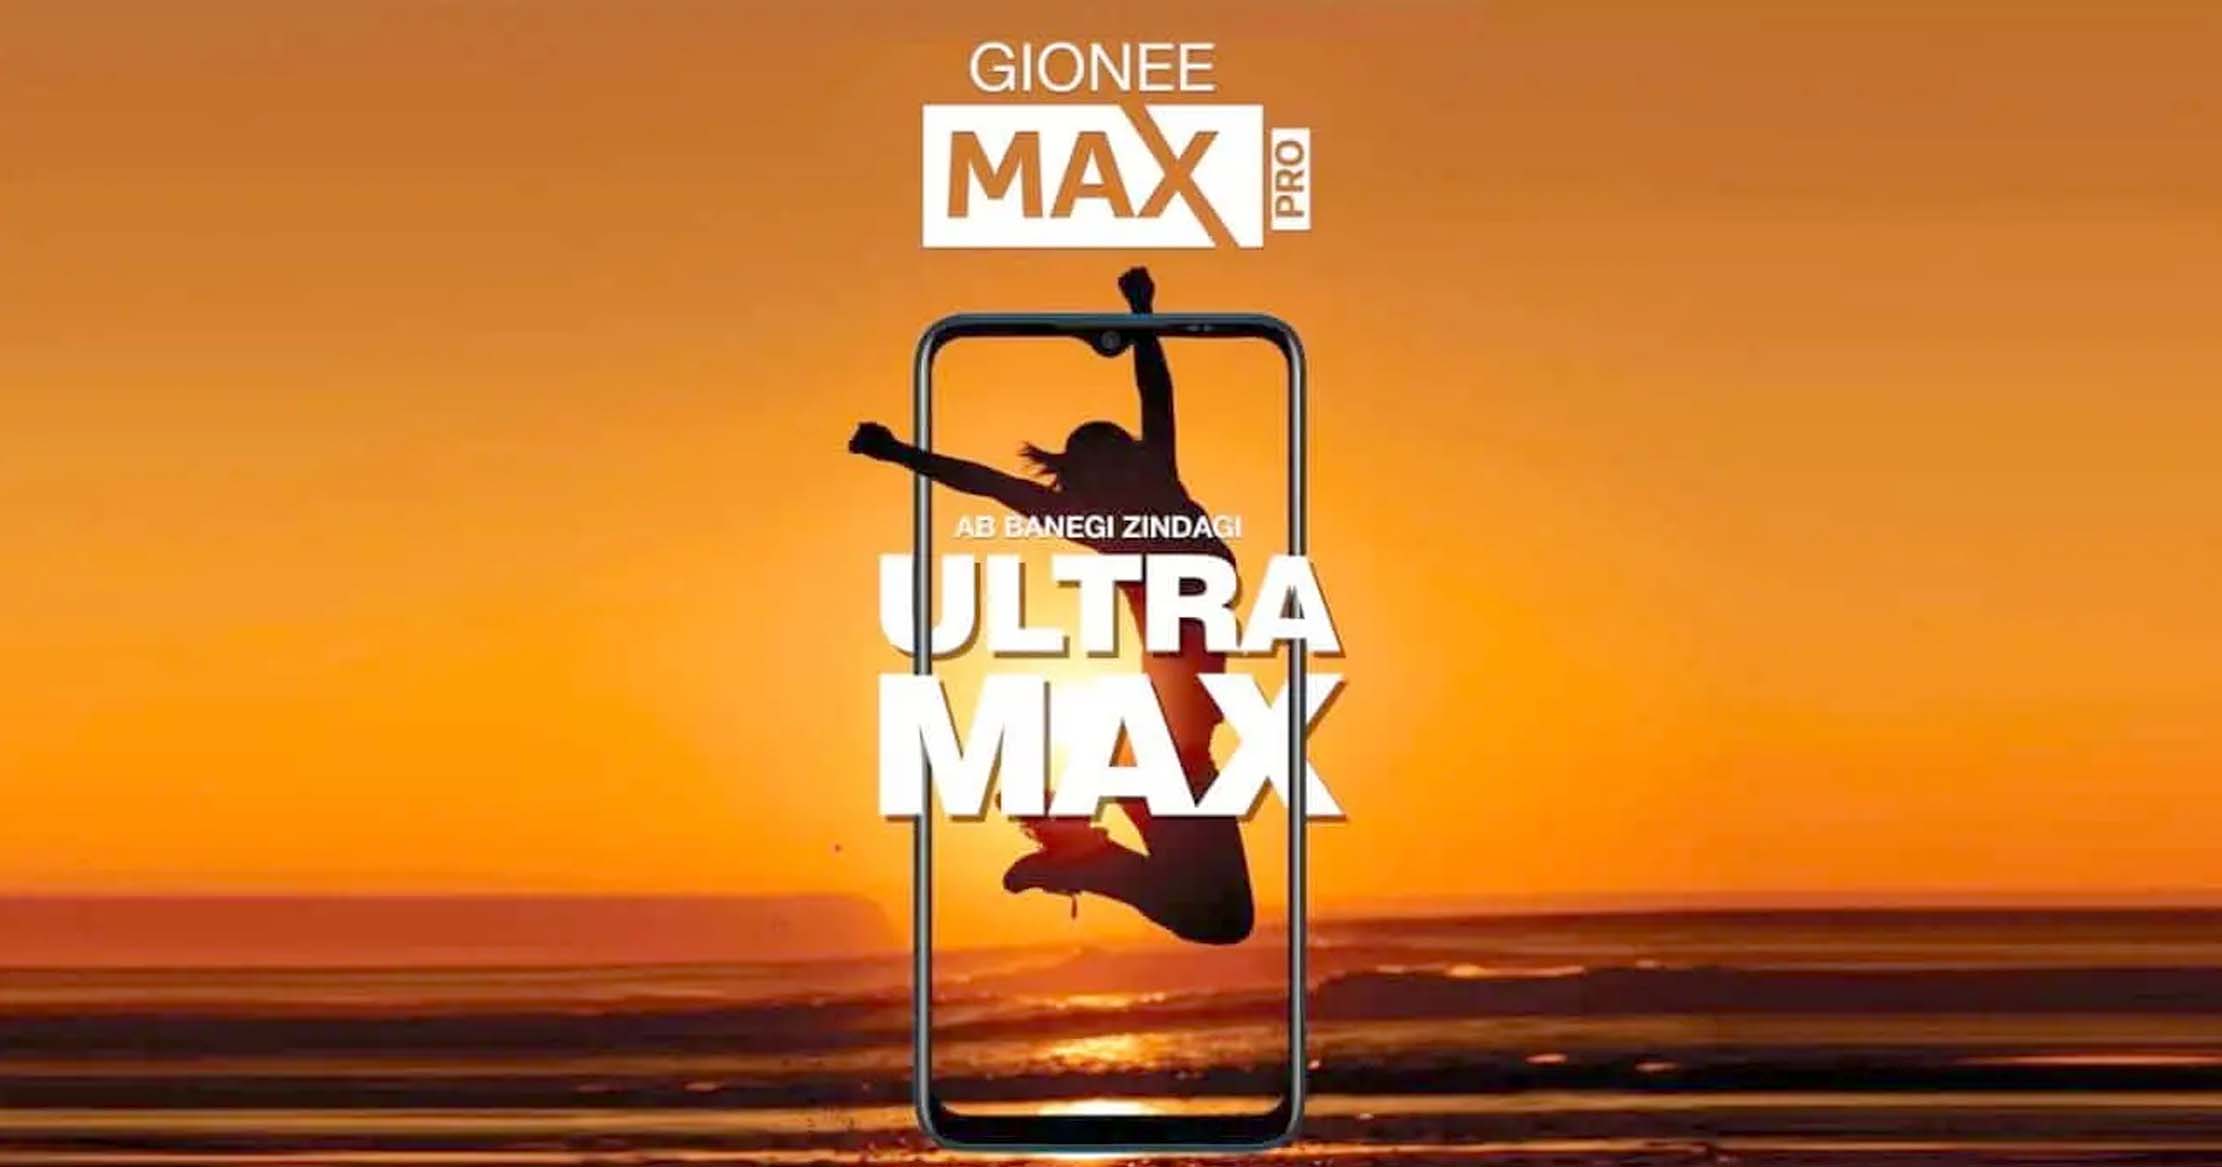 6000mAh बैटरी और बड़ी स्क्रीन के साथ आ रहा है Gionee Max Pro